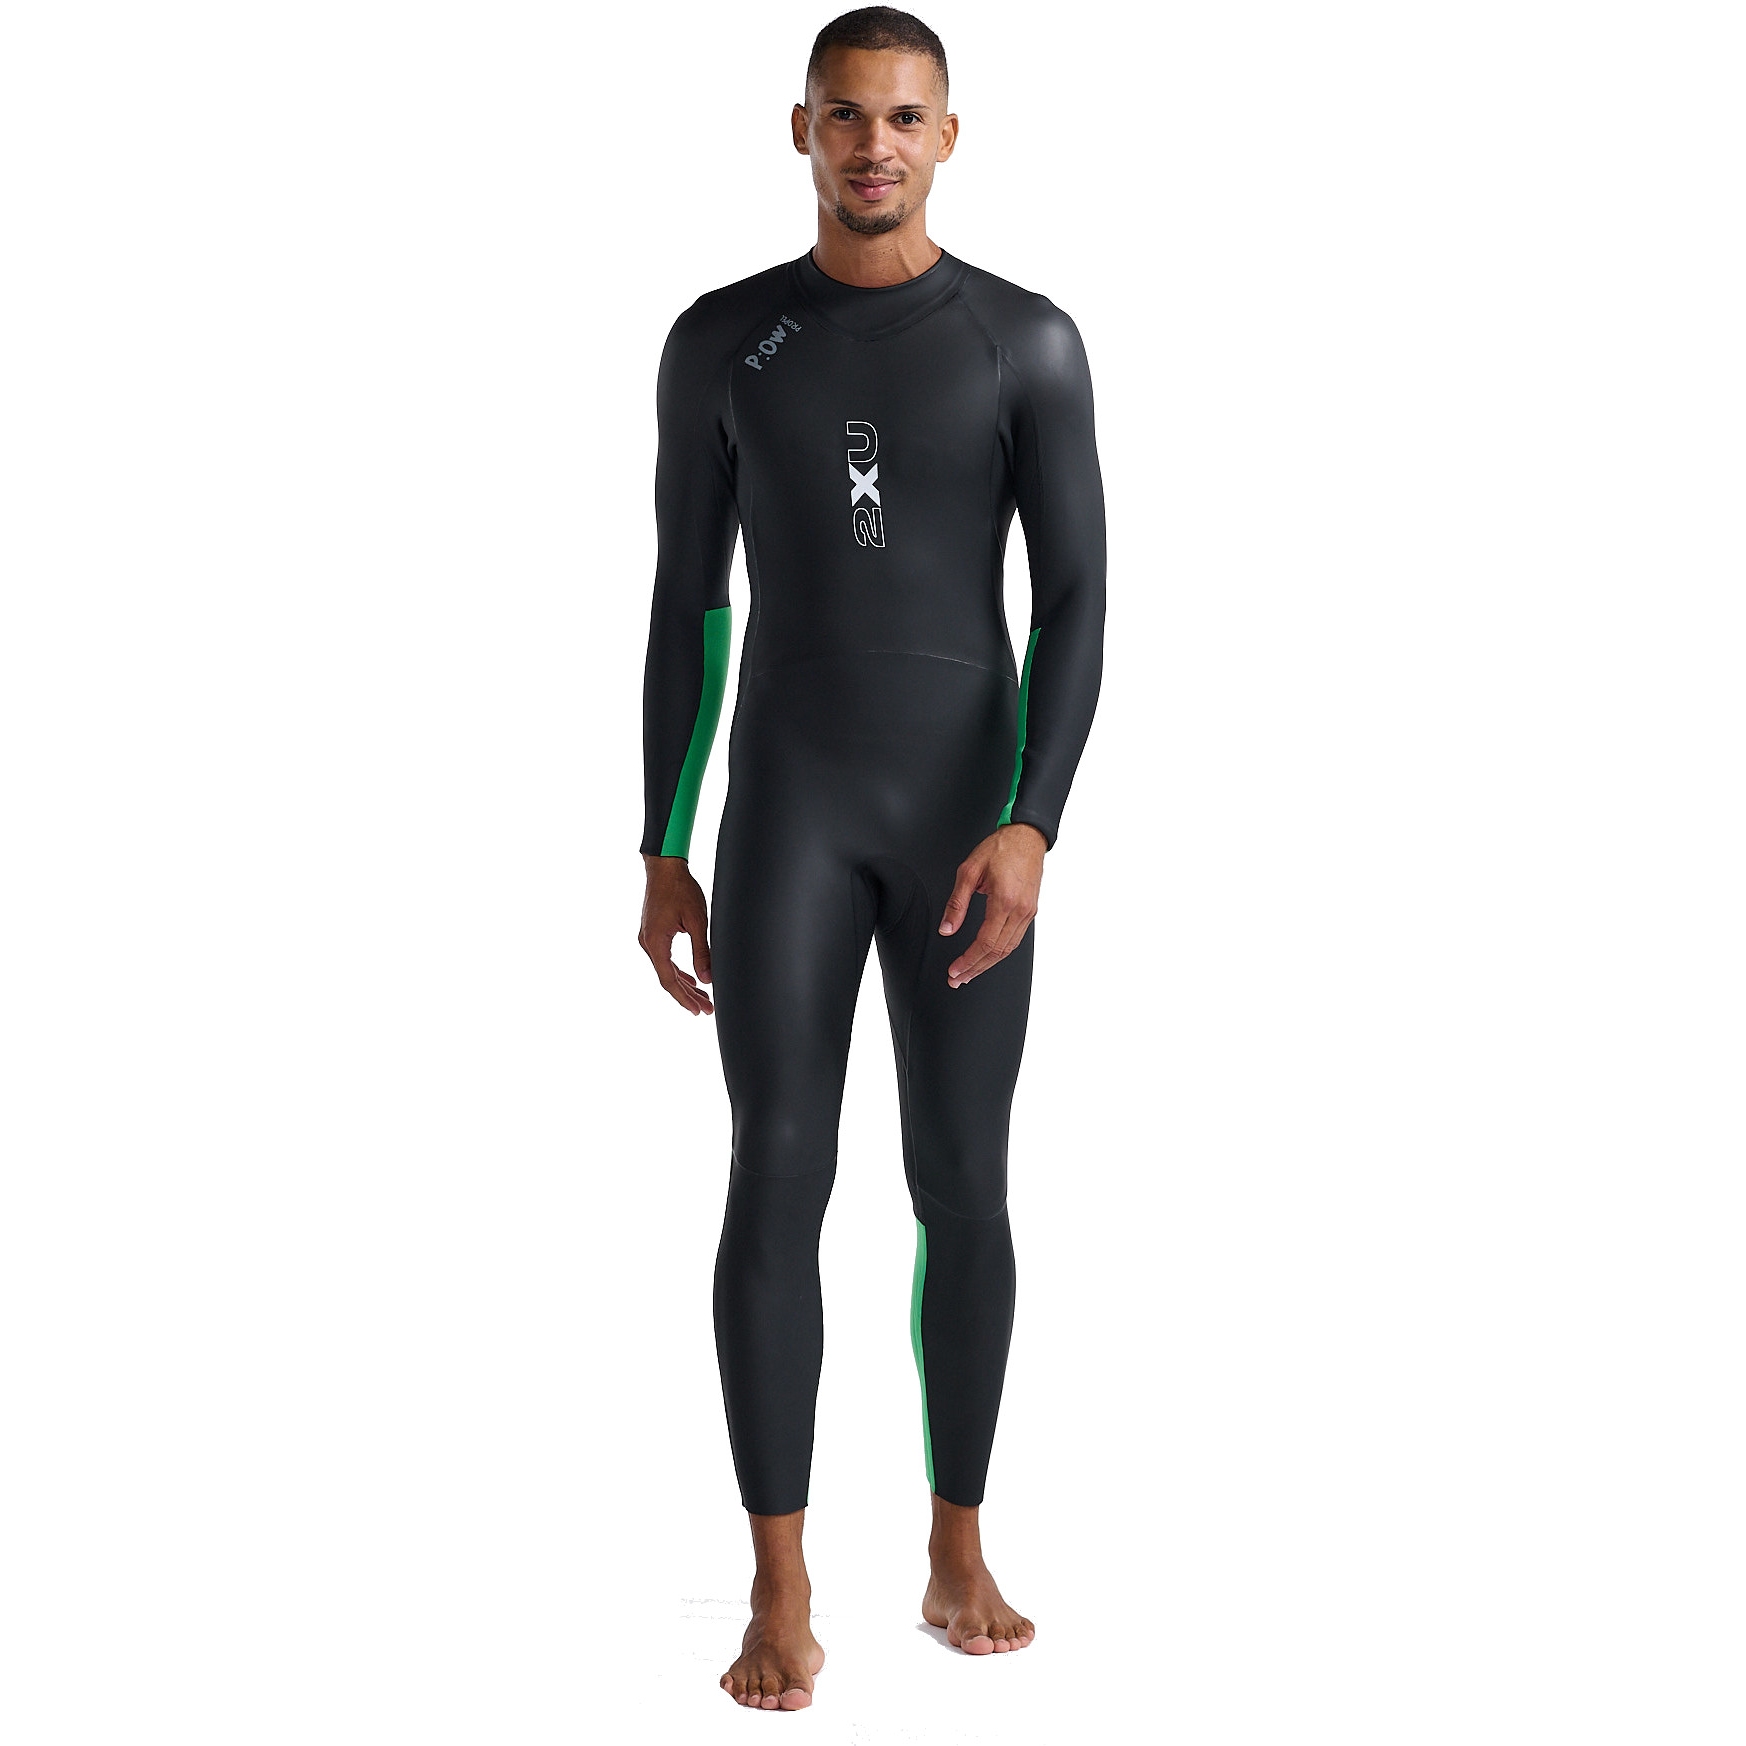 Productfoto van 2XU Propel Open Water Wetsuit Heren - black/bright green